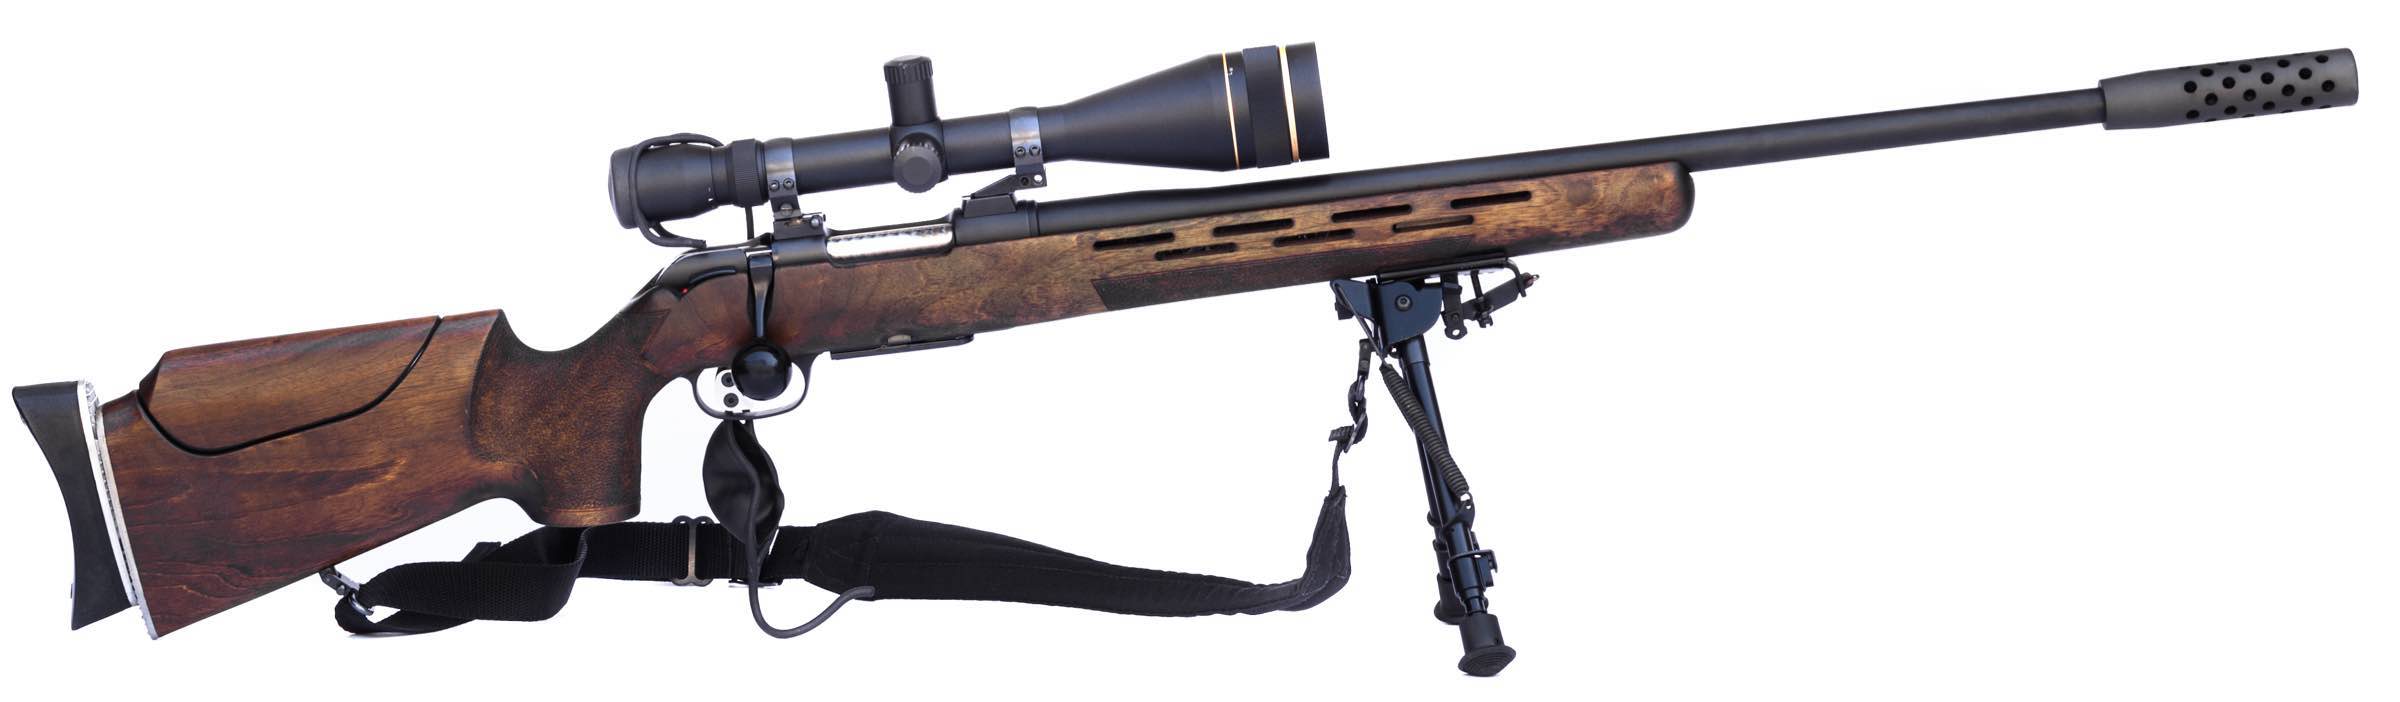 Long Range Rifle With Scope